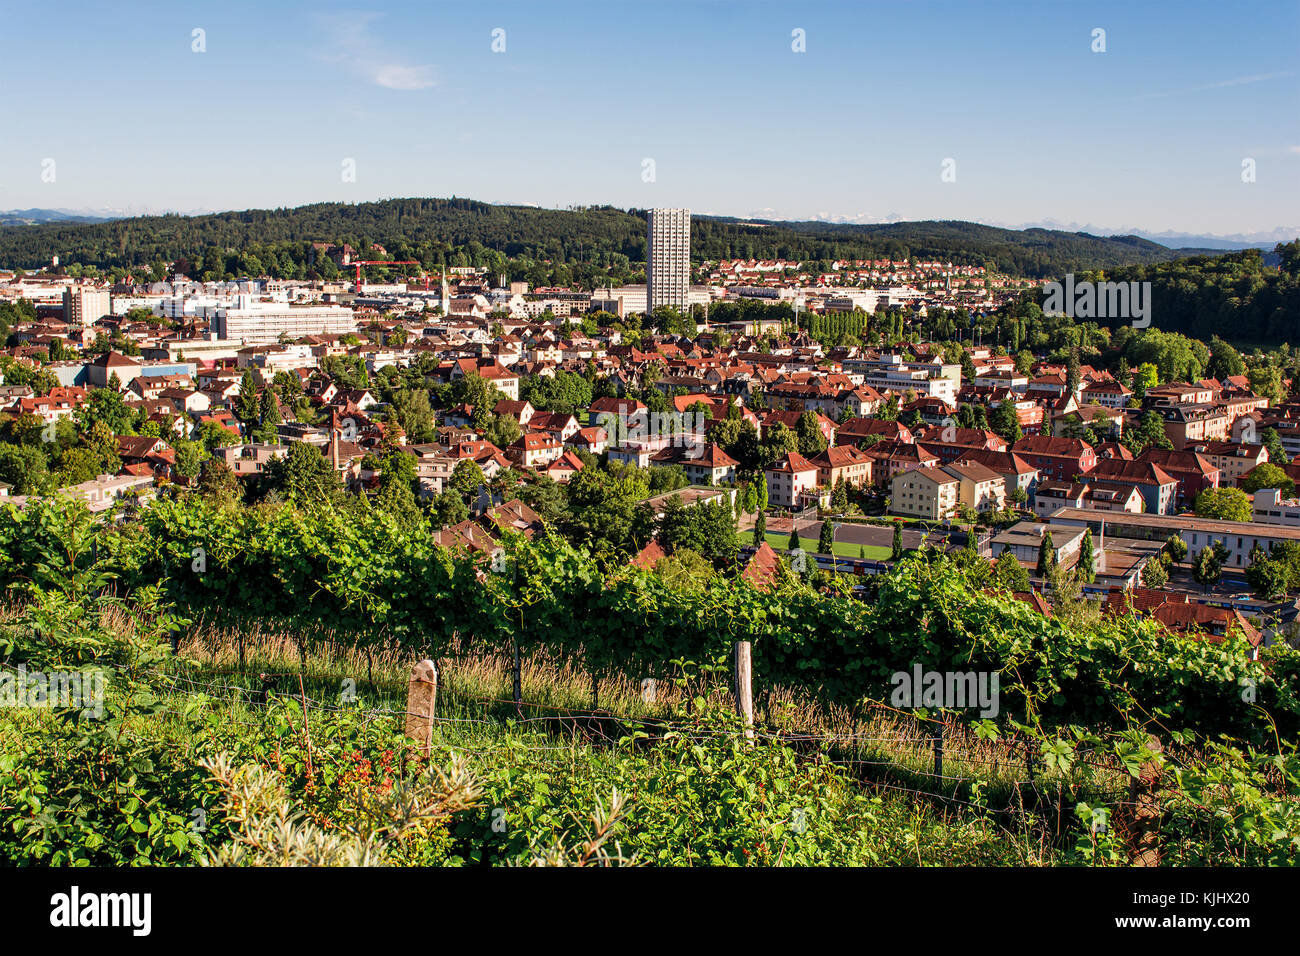 Cityscape, Winterthur, Switzerland Stock Photo